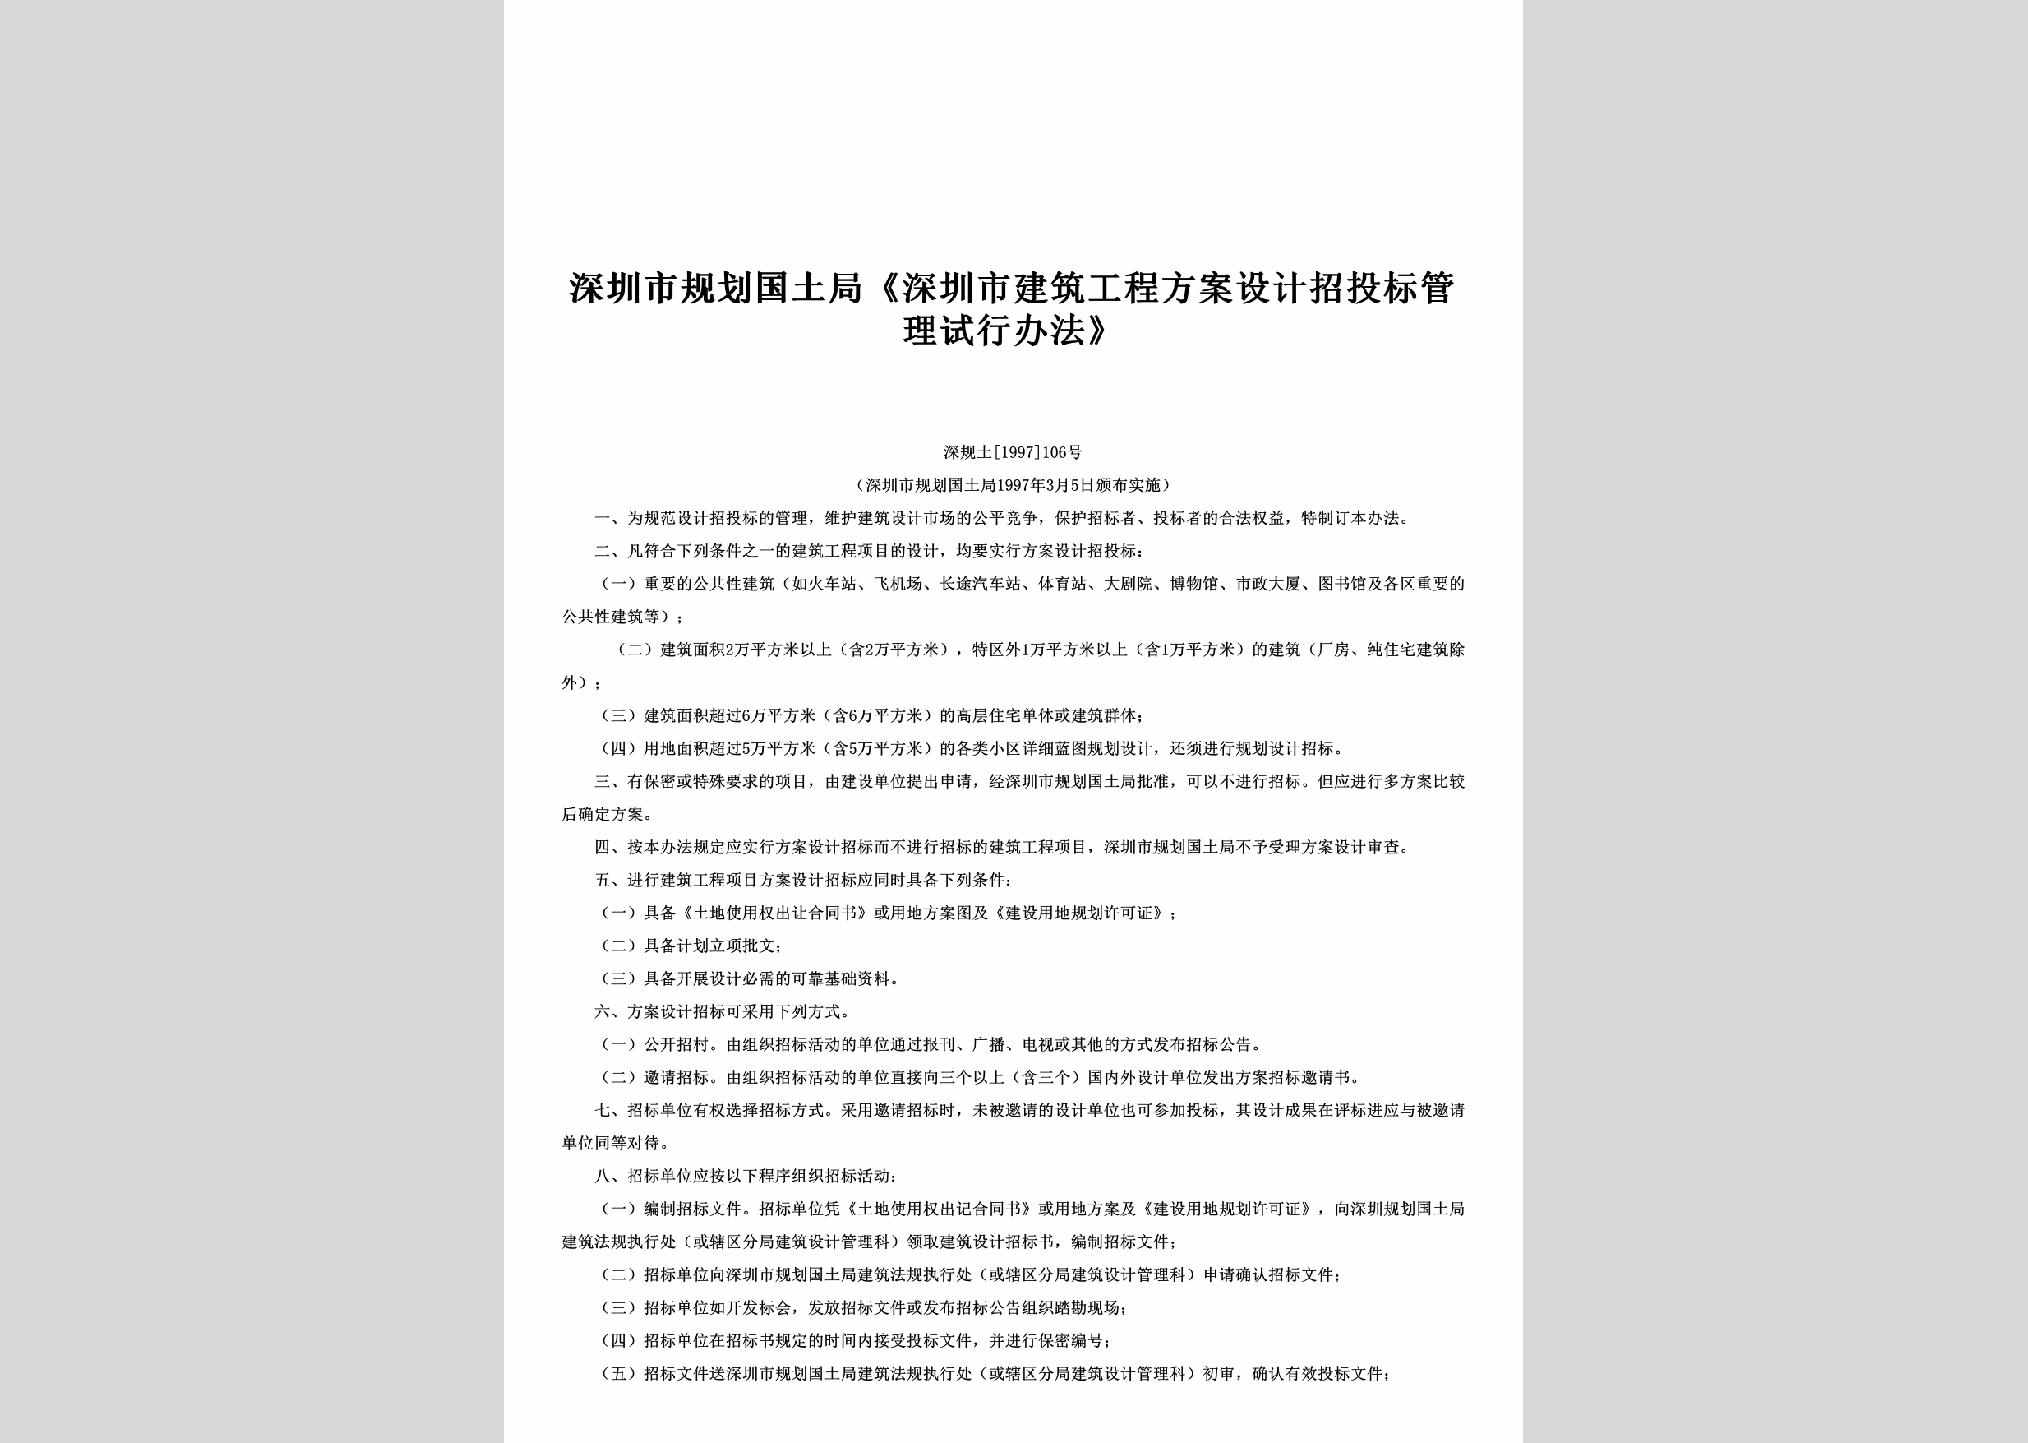 深规土[1997]106号：《深圳市建筑工程方案设计招投标管理试行办法》